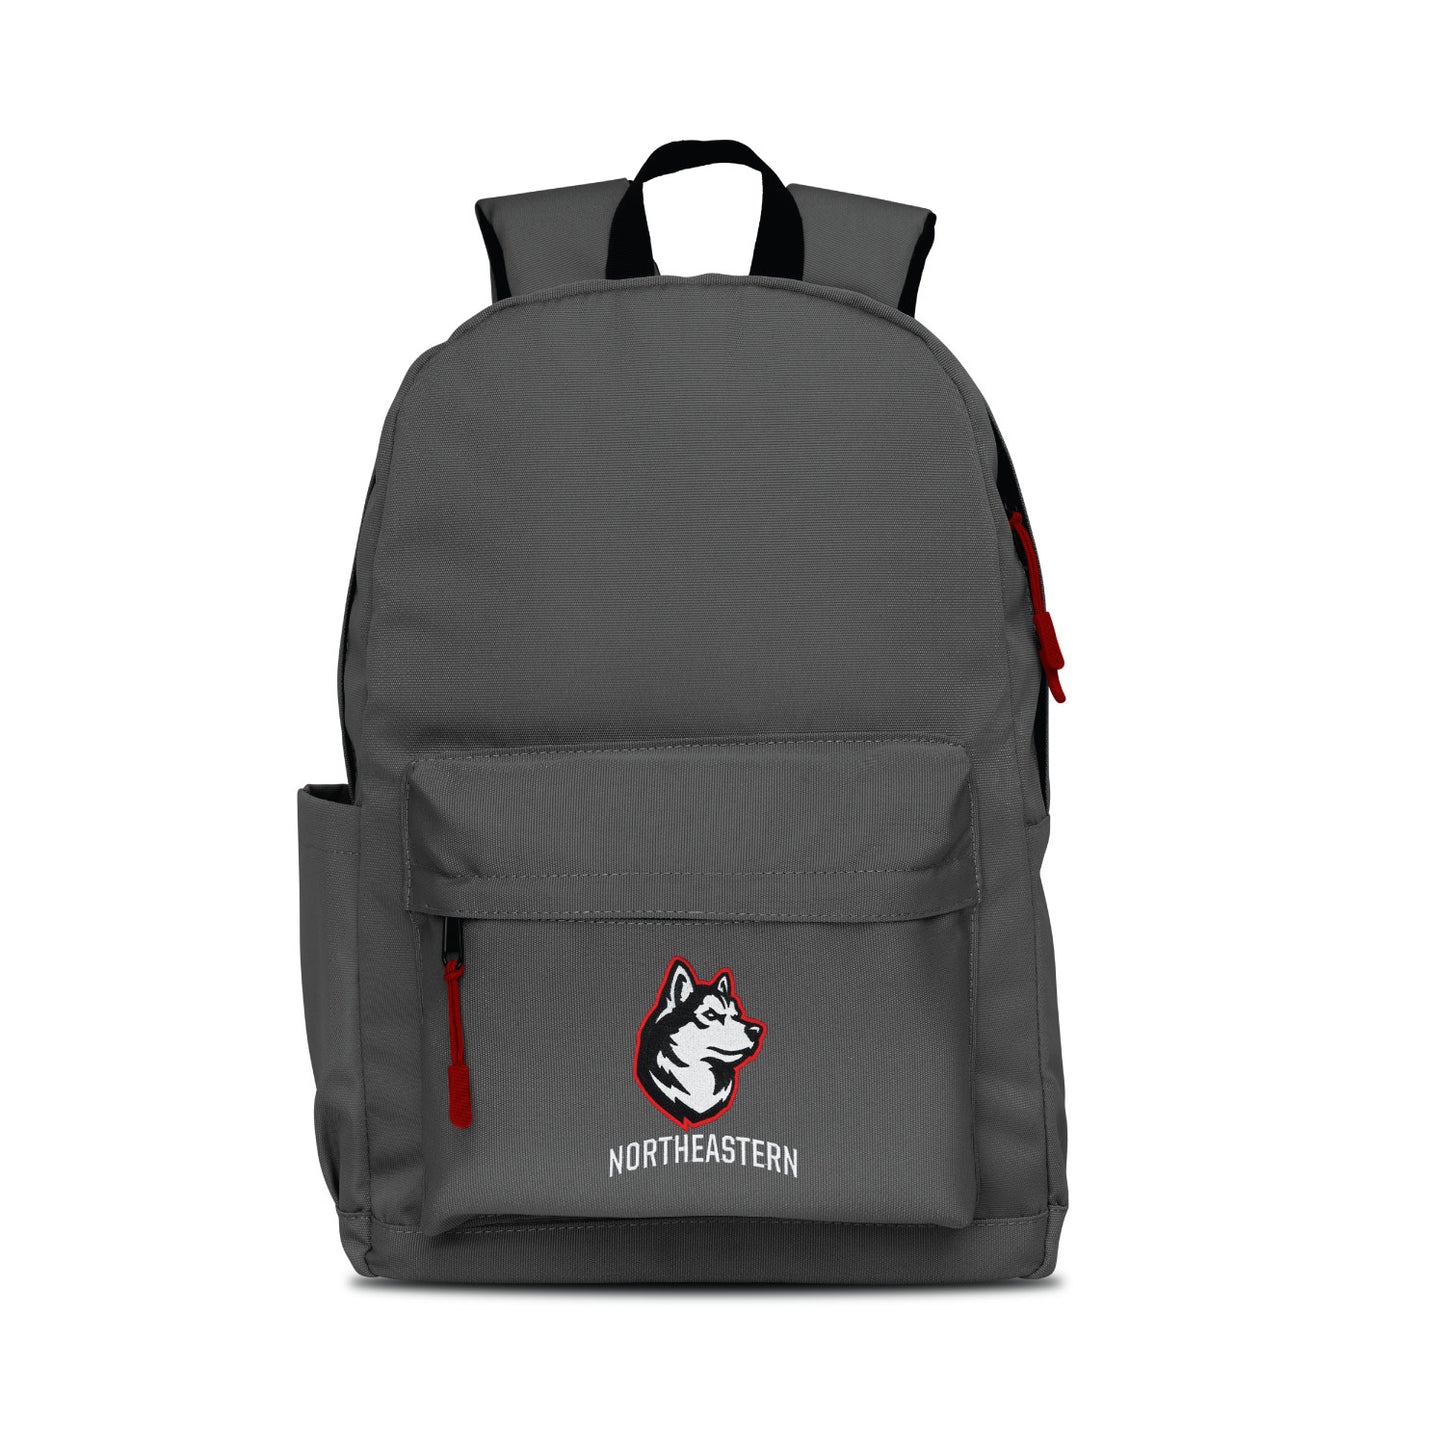 Northeastern Huskies Campus Laptop Backpack- Gray